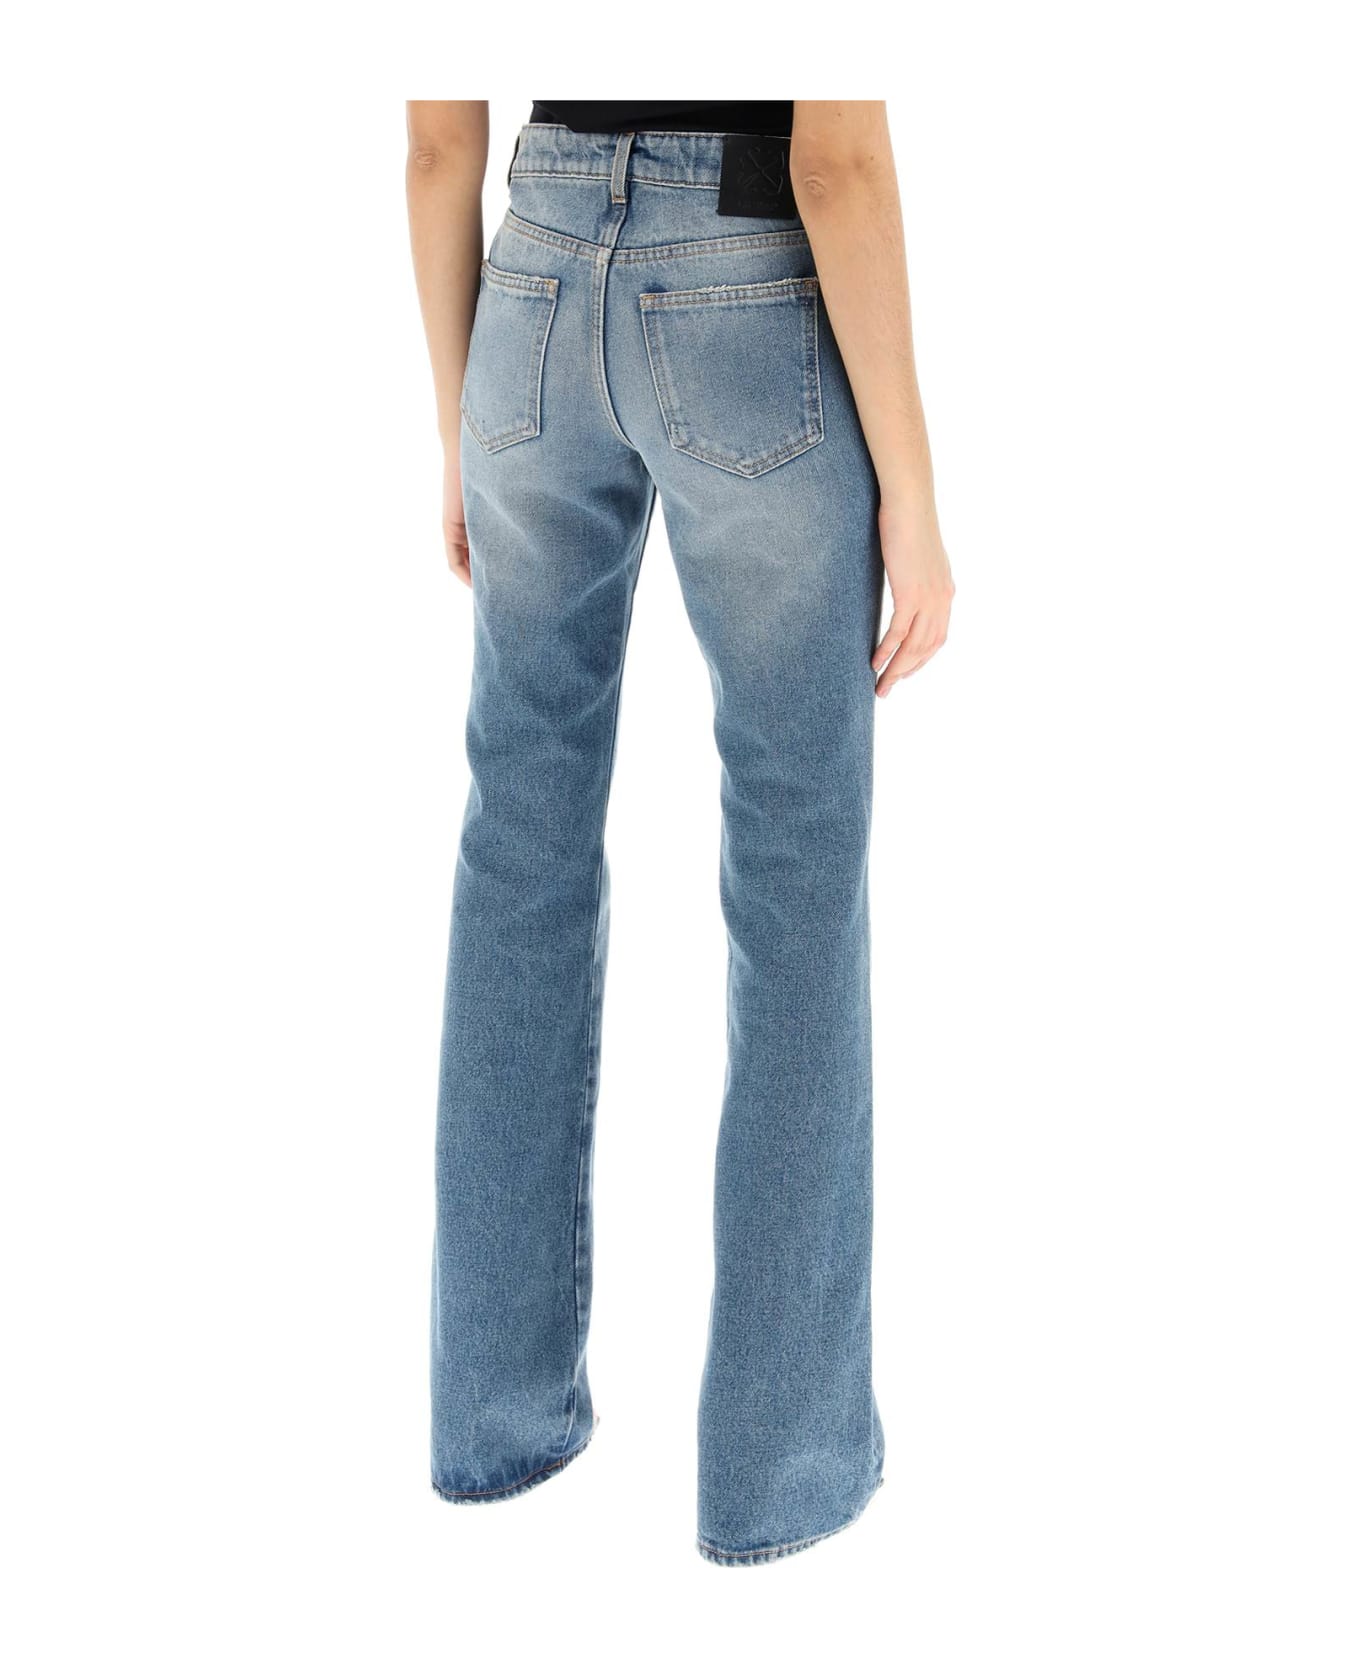 Off-White Bootcut Jeans - BLUE NO COLOR (Light blue)